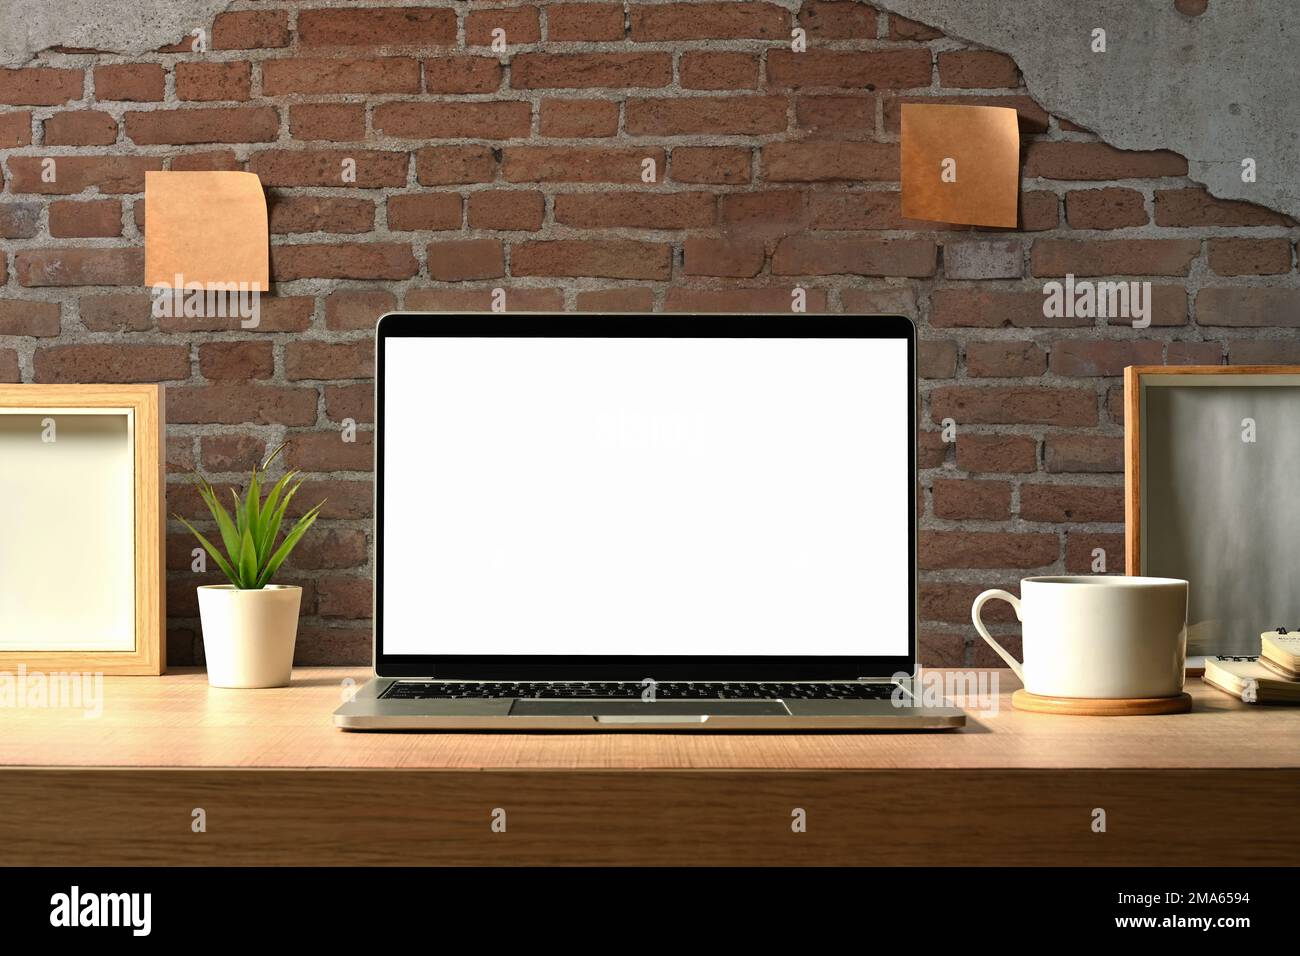 Vista frontale del computer portatile con schermo vuoto, impianto di casa, tazza da caffè e libri su tavolo di legno Foto Stock